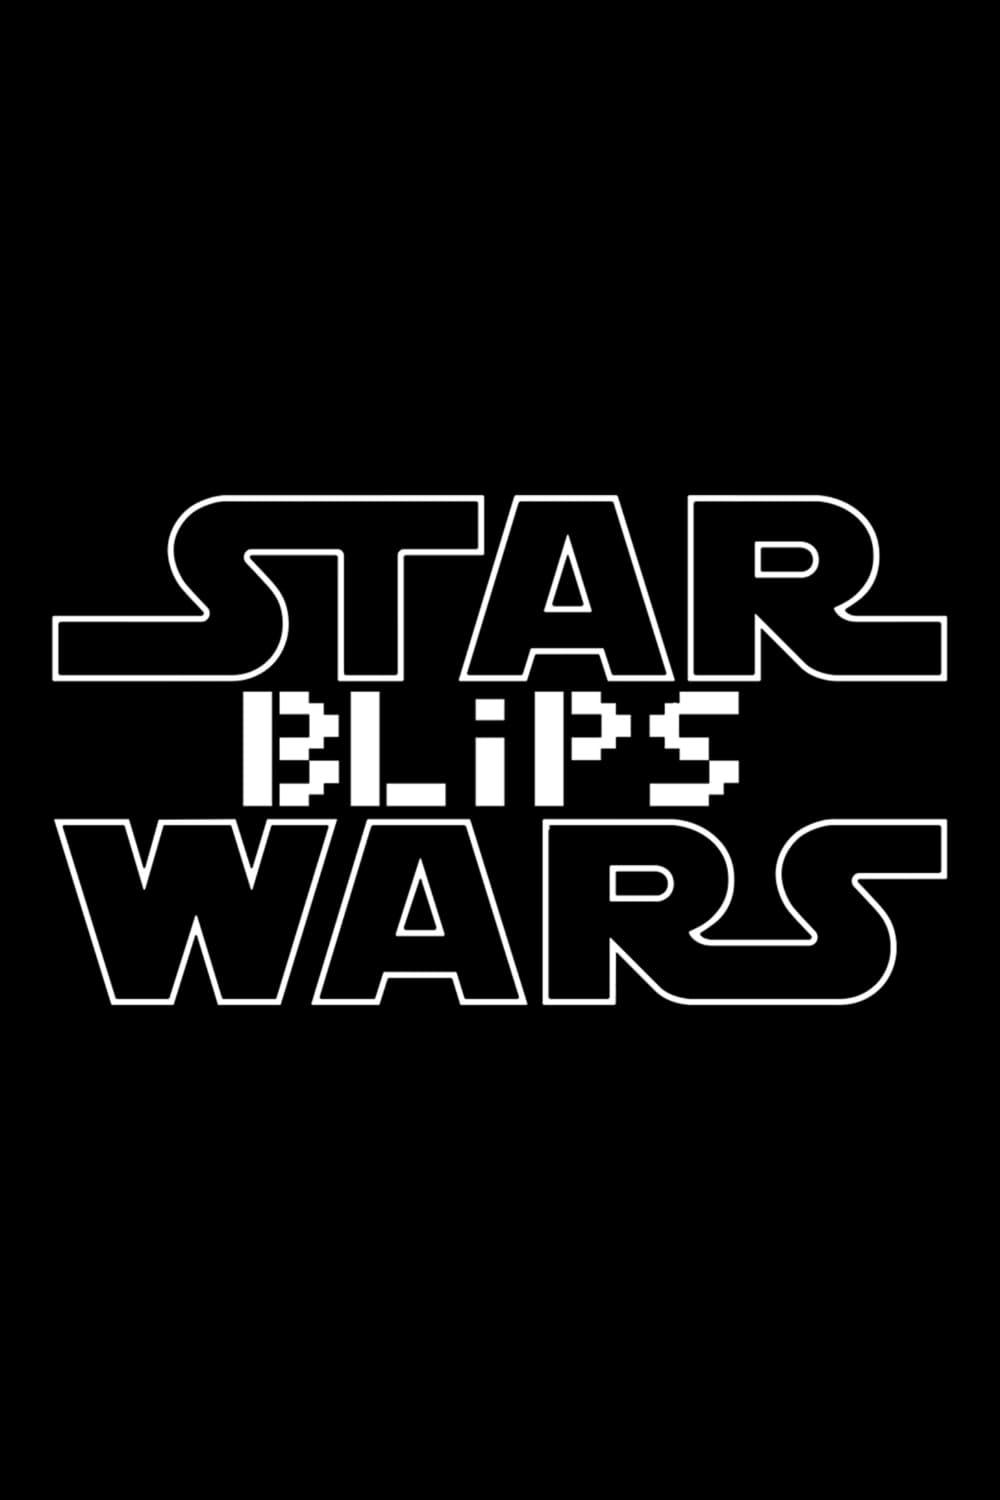 Star Wars Blips poster